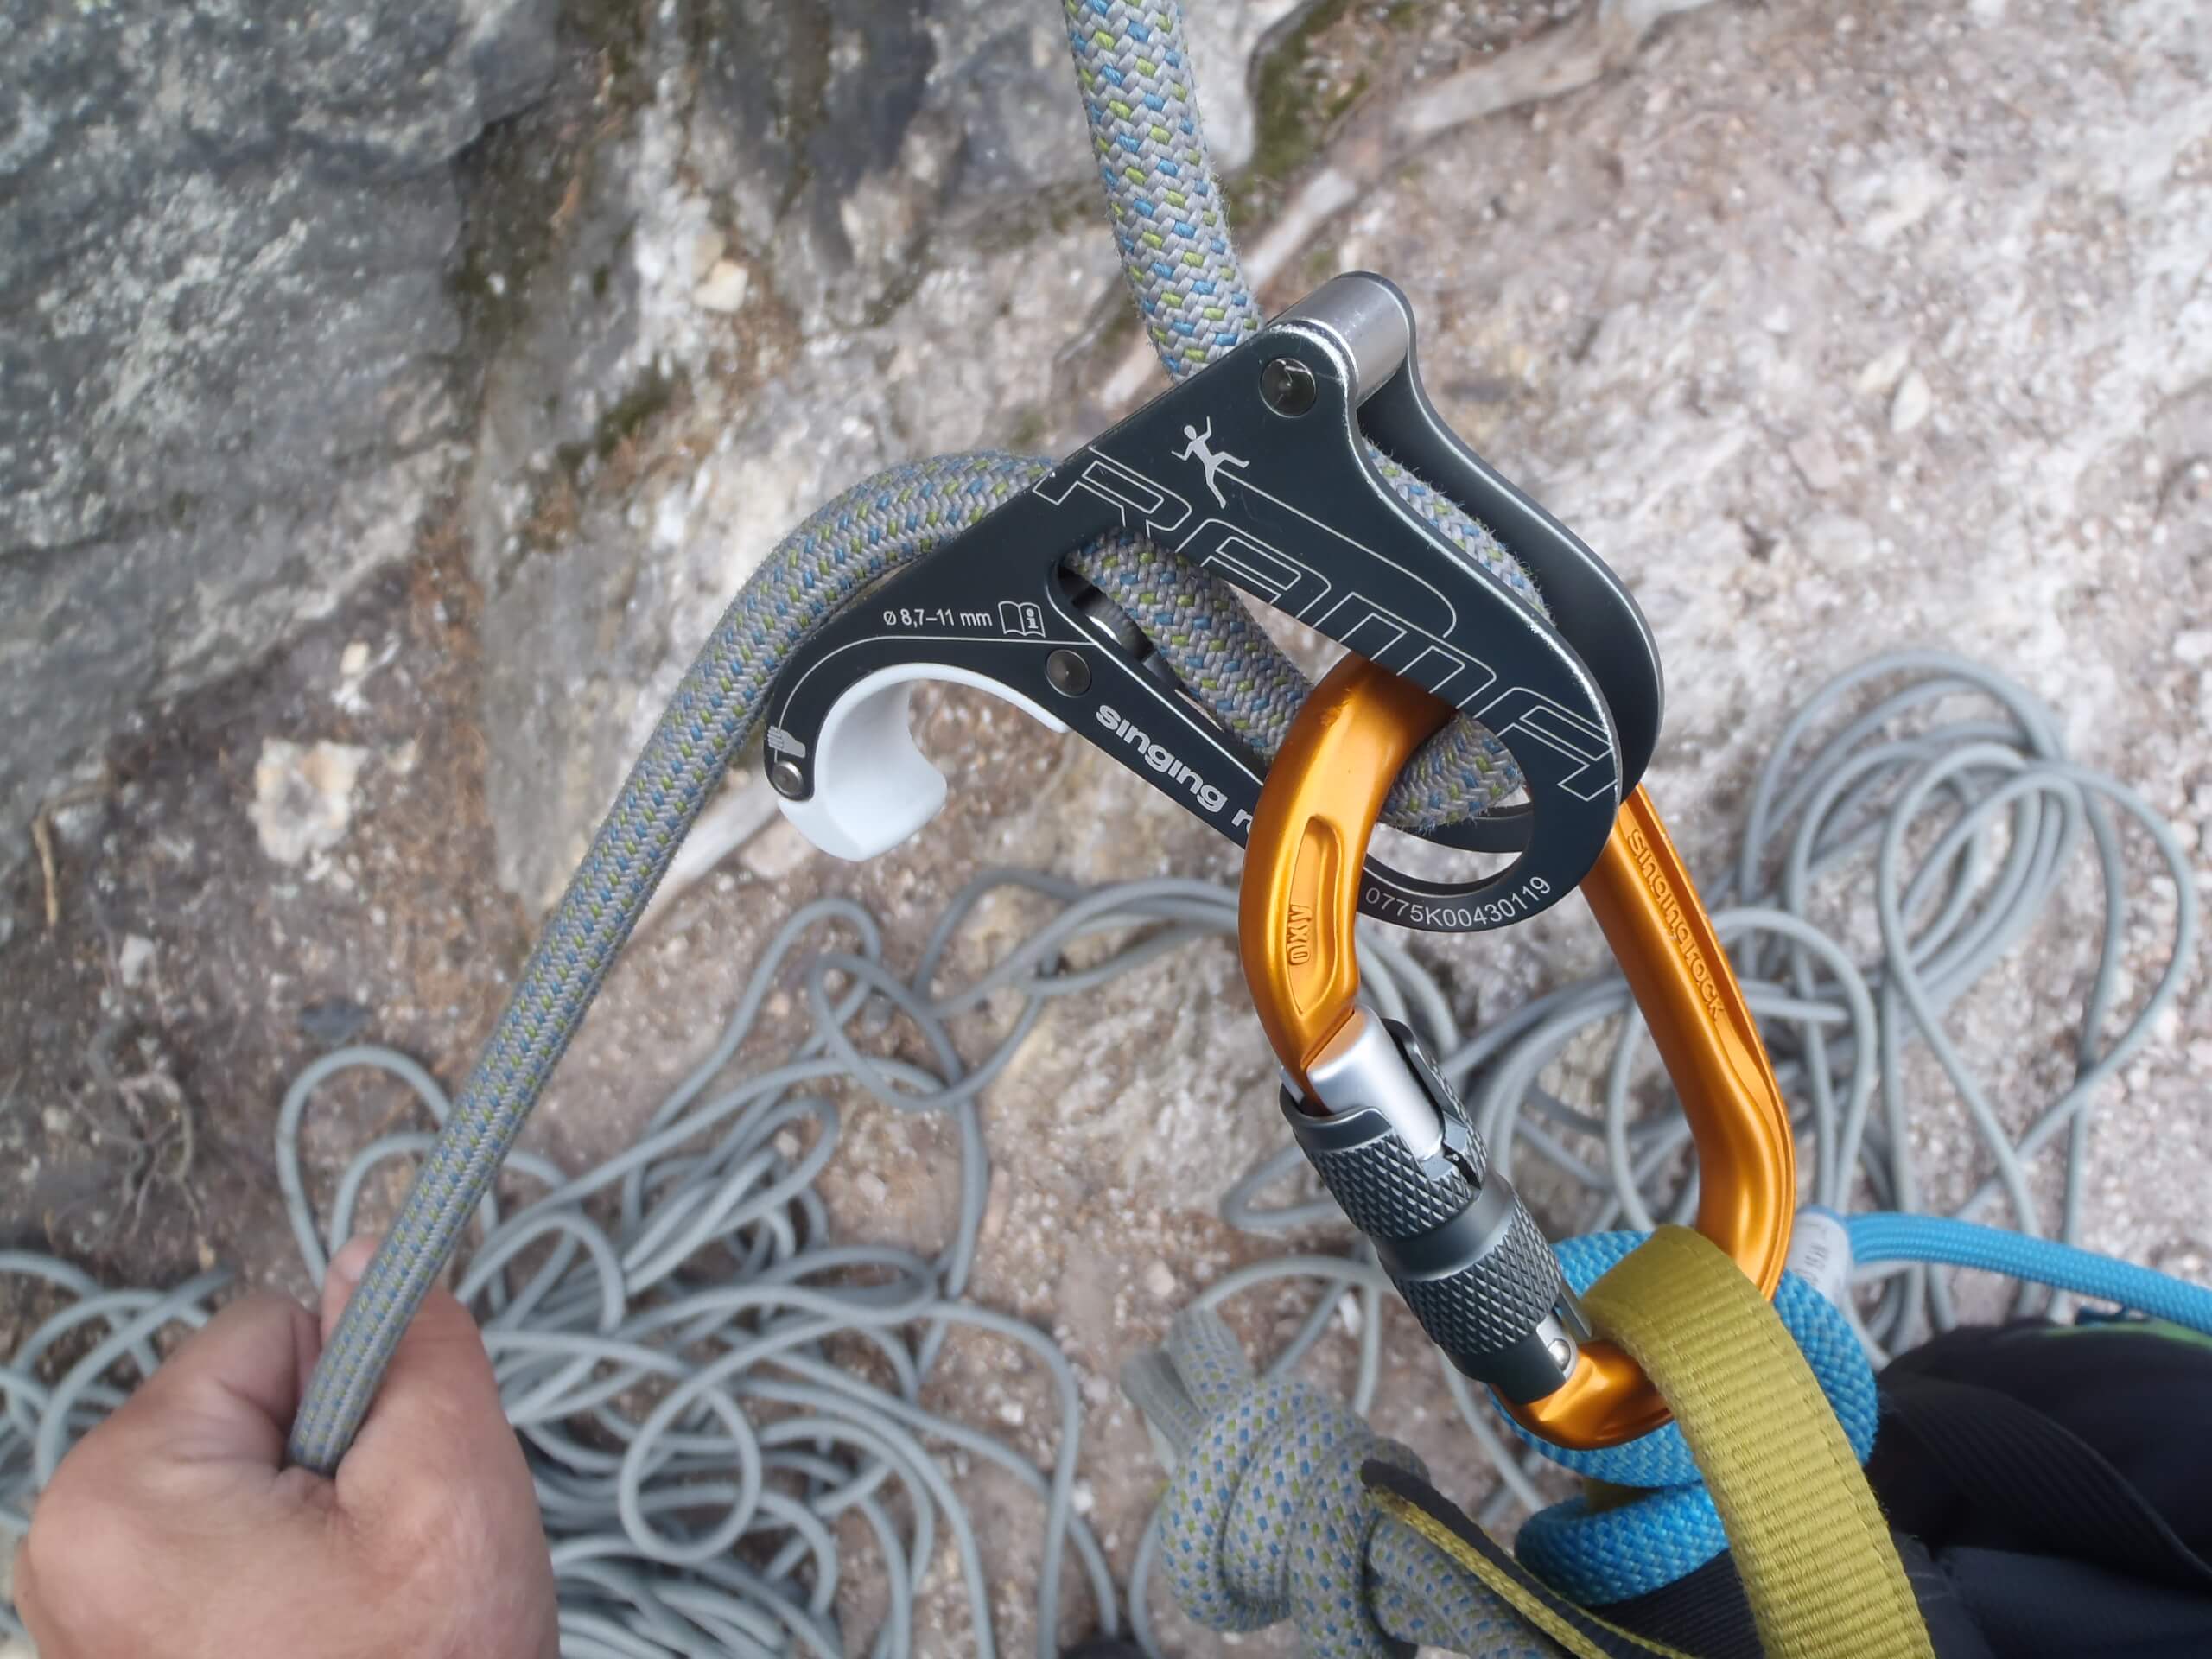 Správné vložení lana a doporučené průměry lan jsou přímo na těle jistítka RAMA - Singing Rock.